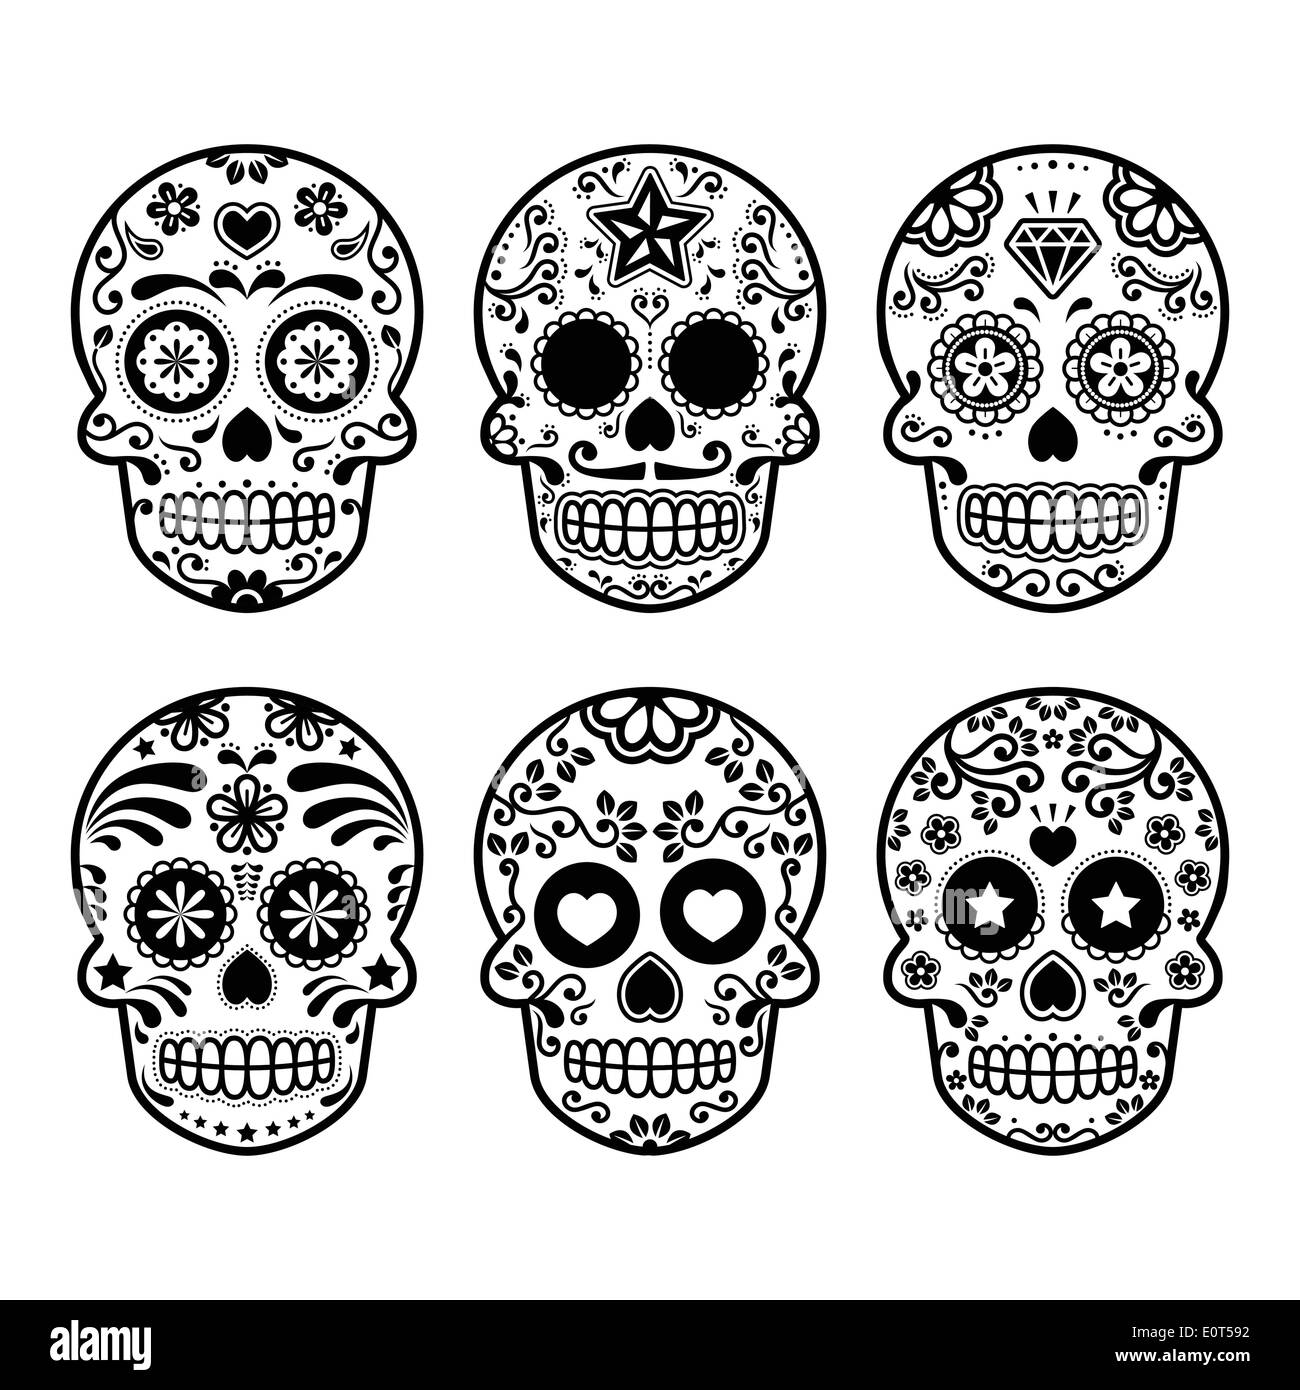 Mexican sugar skull, Dia de los Muertos icons set Stock Vector